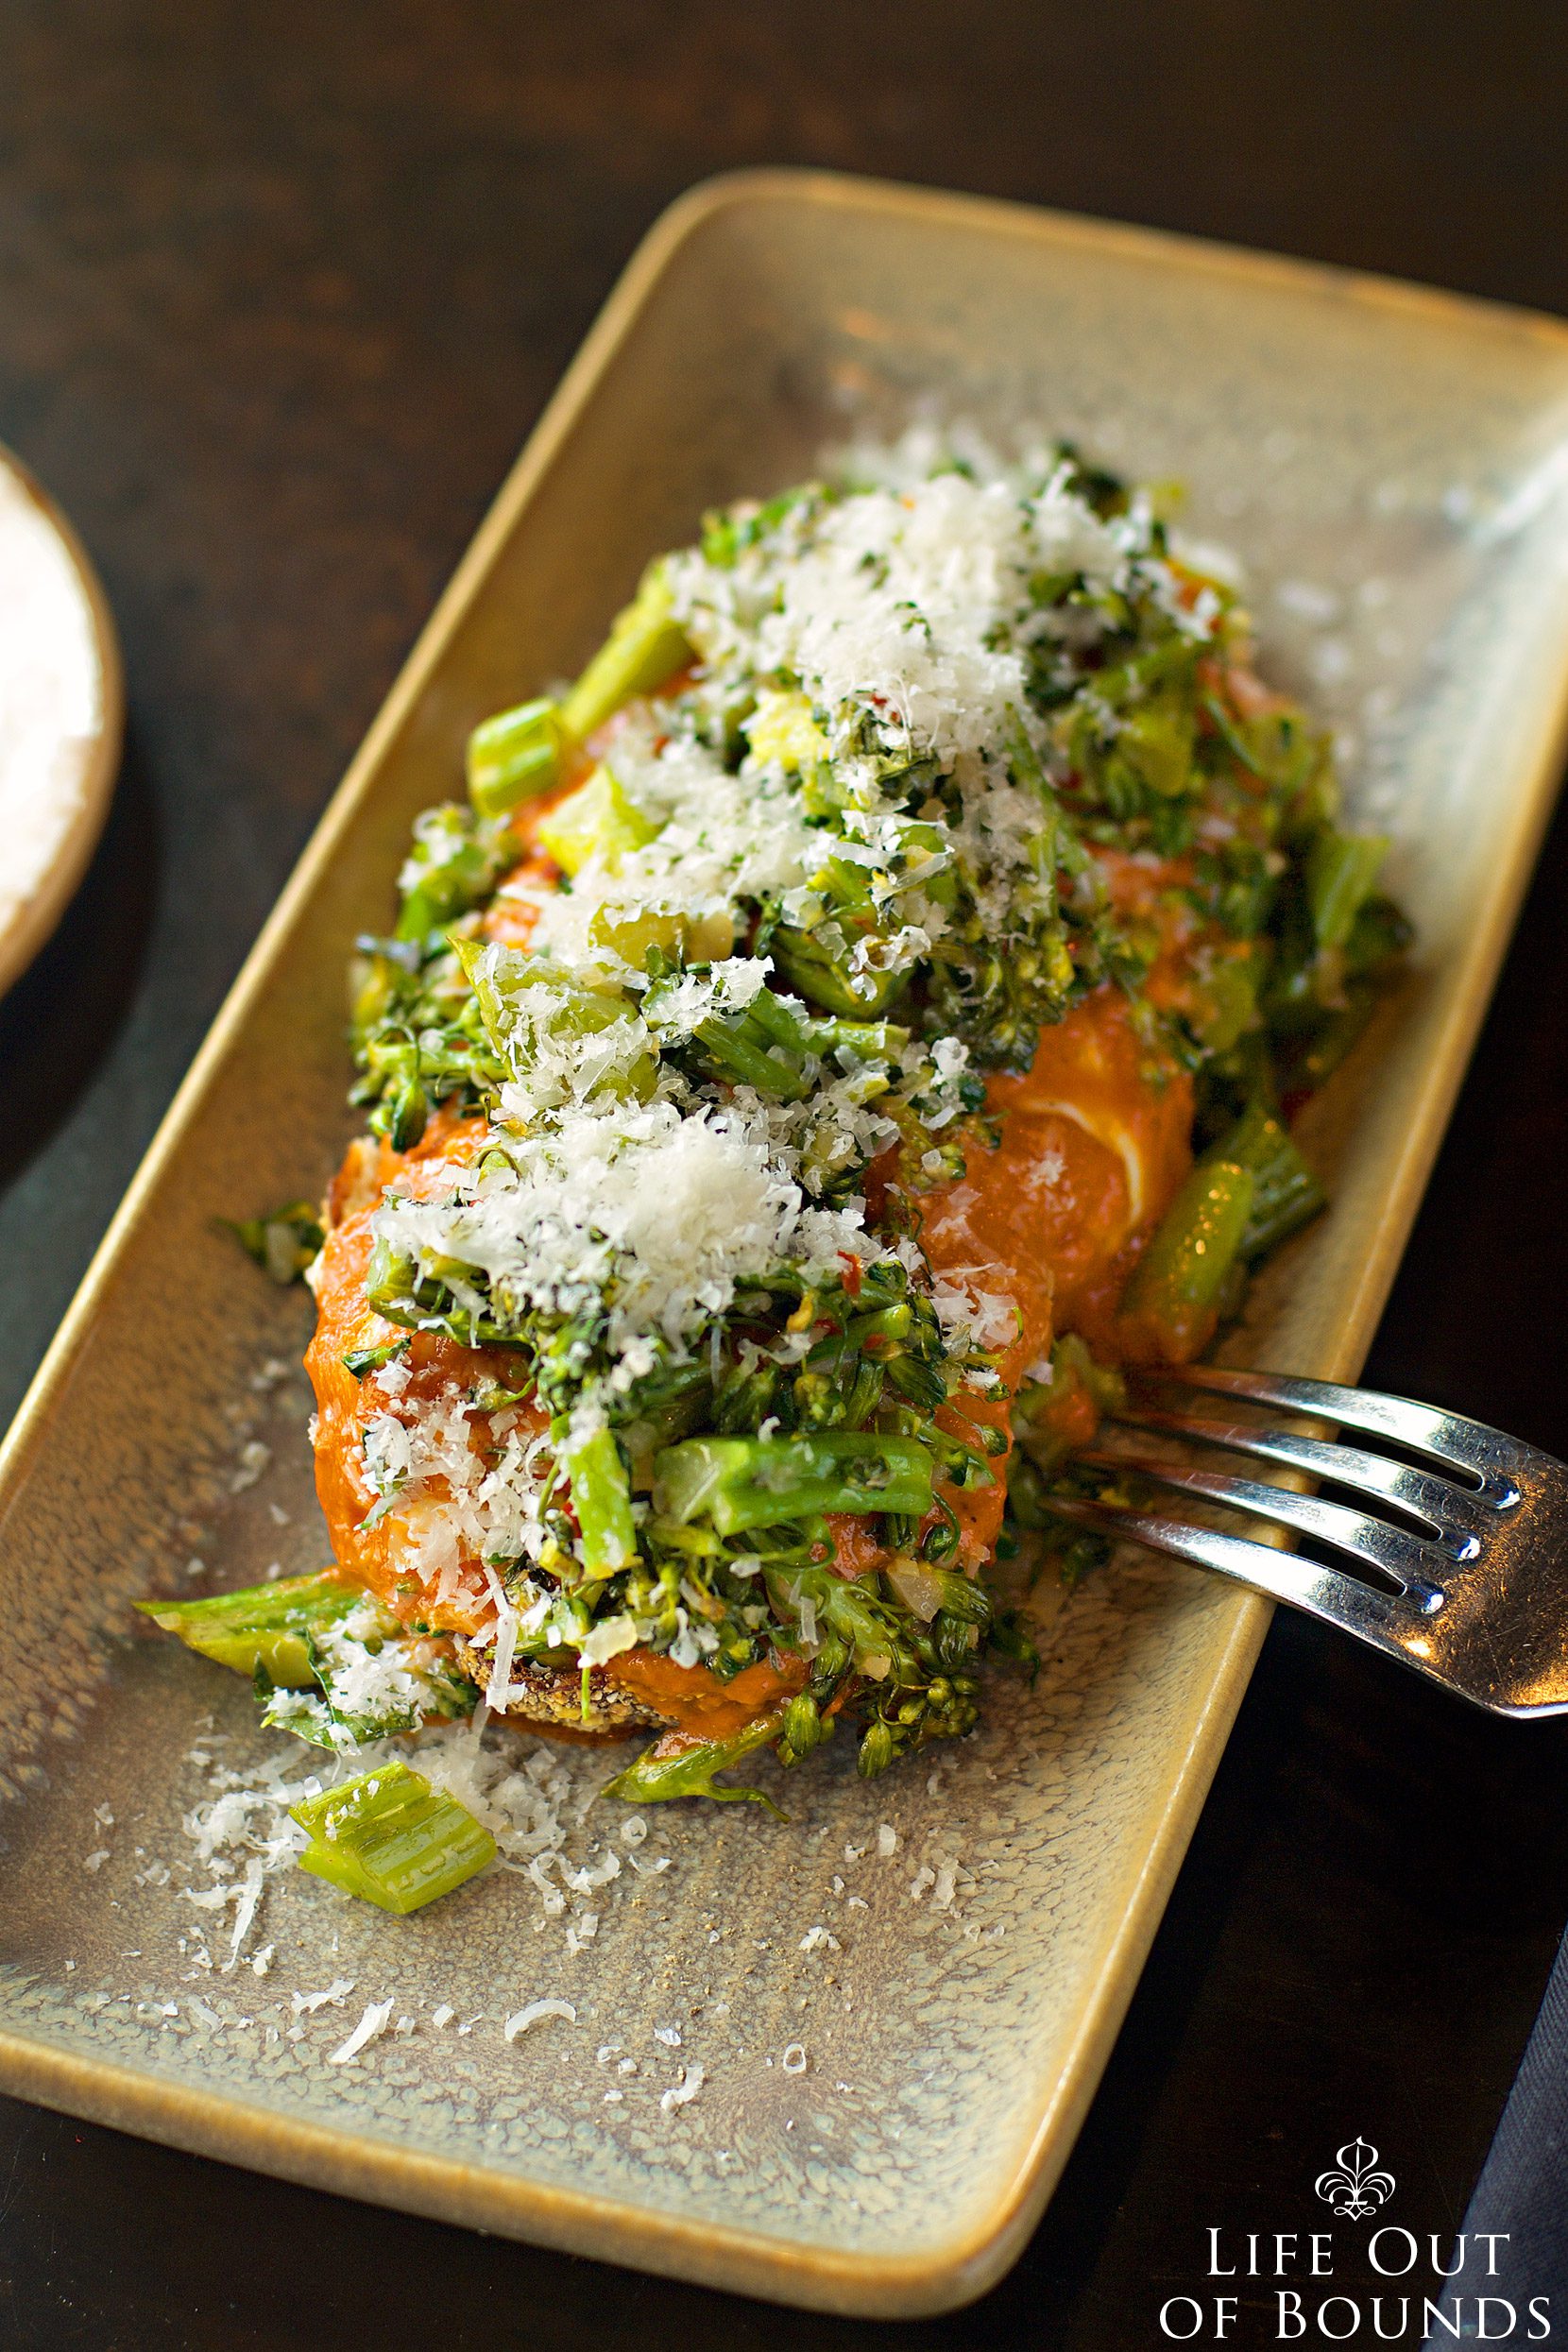 Grilled-Bread-with-Broccolini-Burrata-and-Romanesco-Sauce-at-OSO-restaurant-Sonoma-California